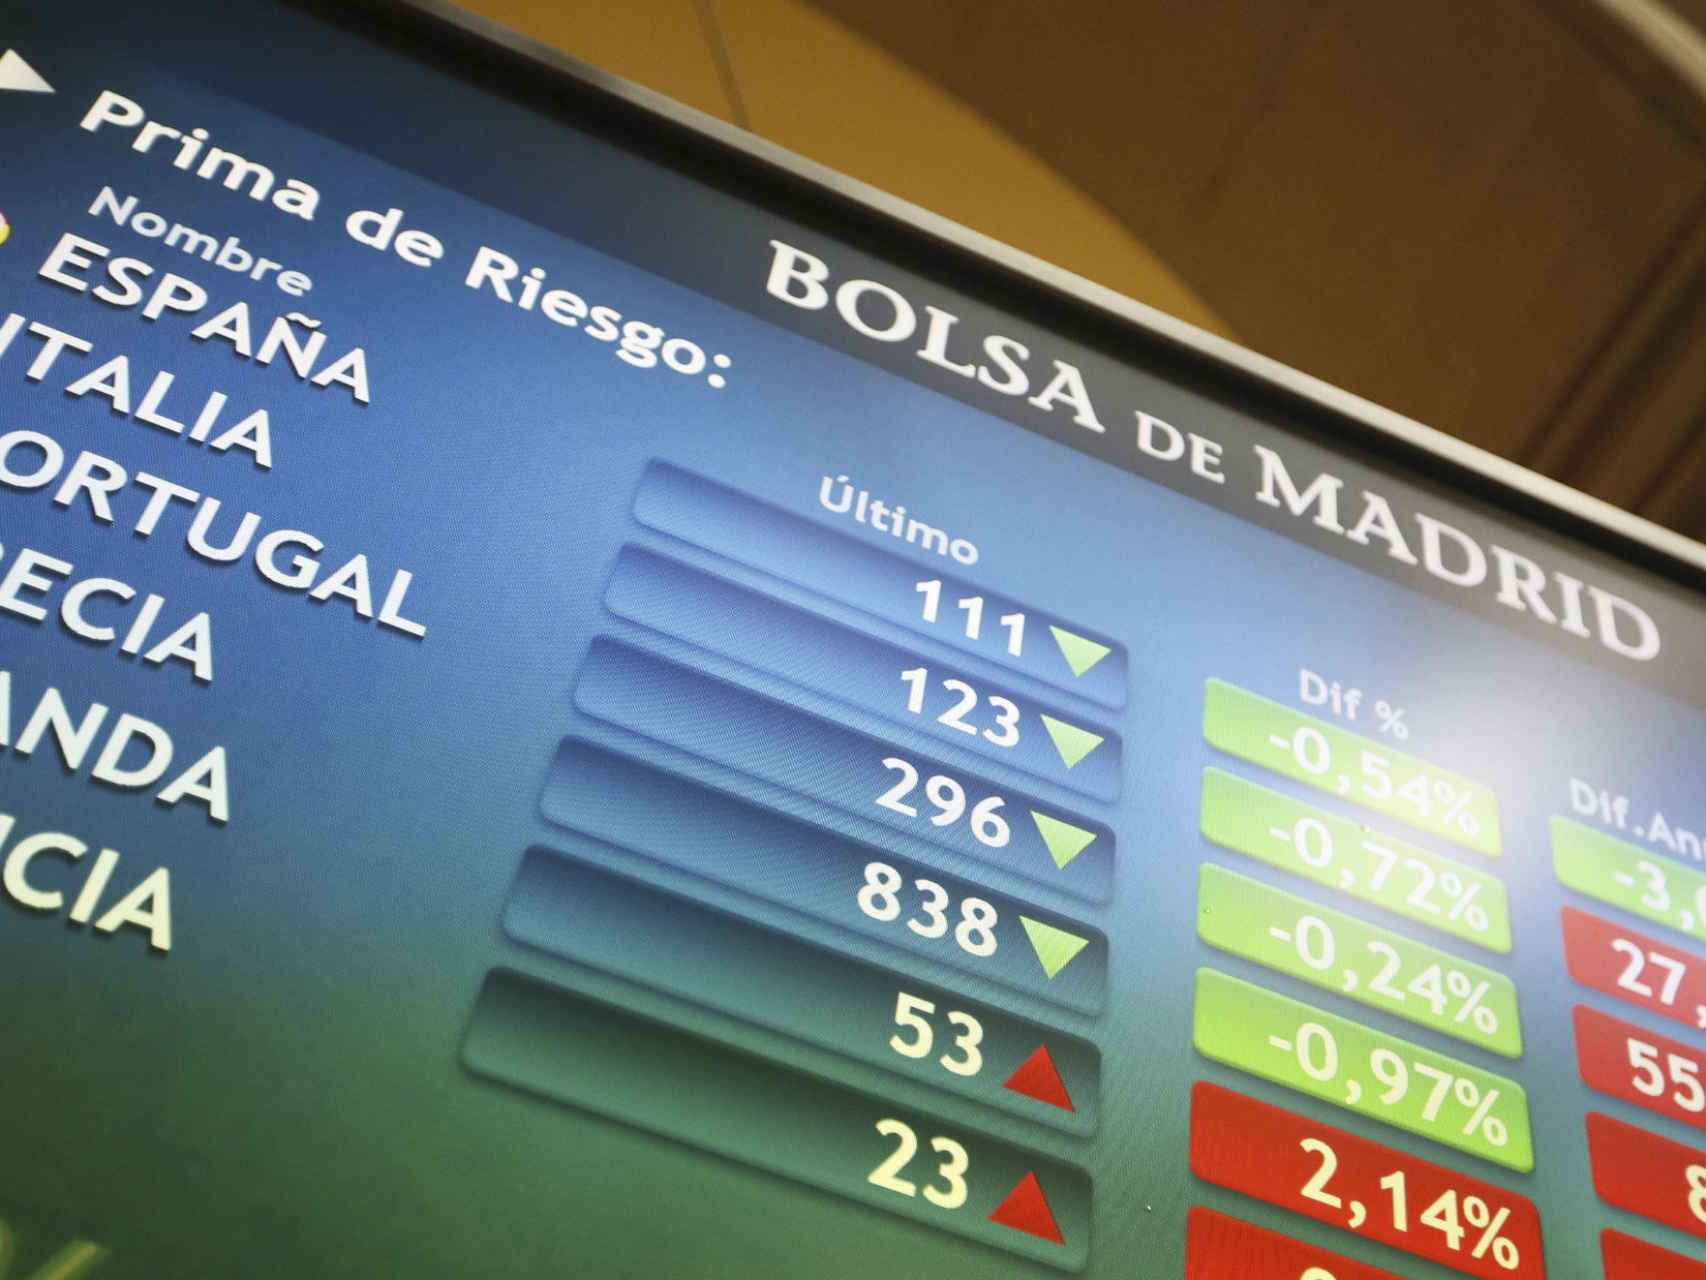 Pantalla de cotizaciones en la Bolsa de Madrid.